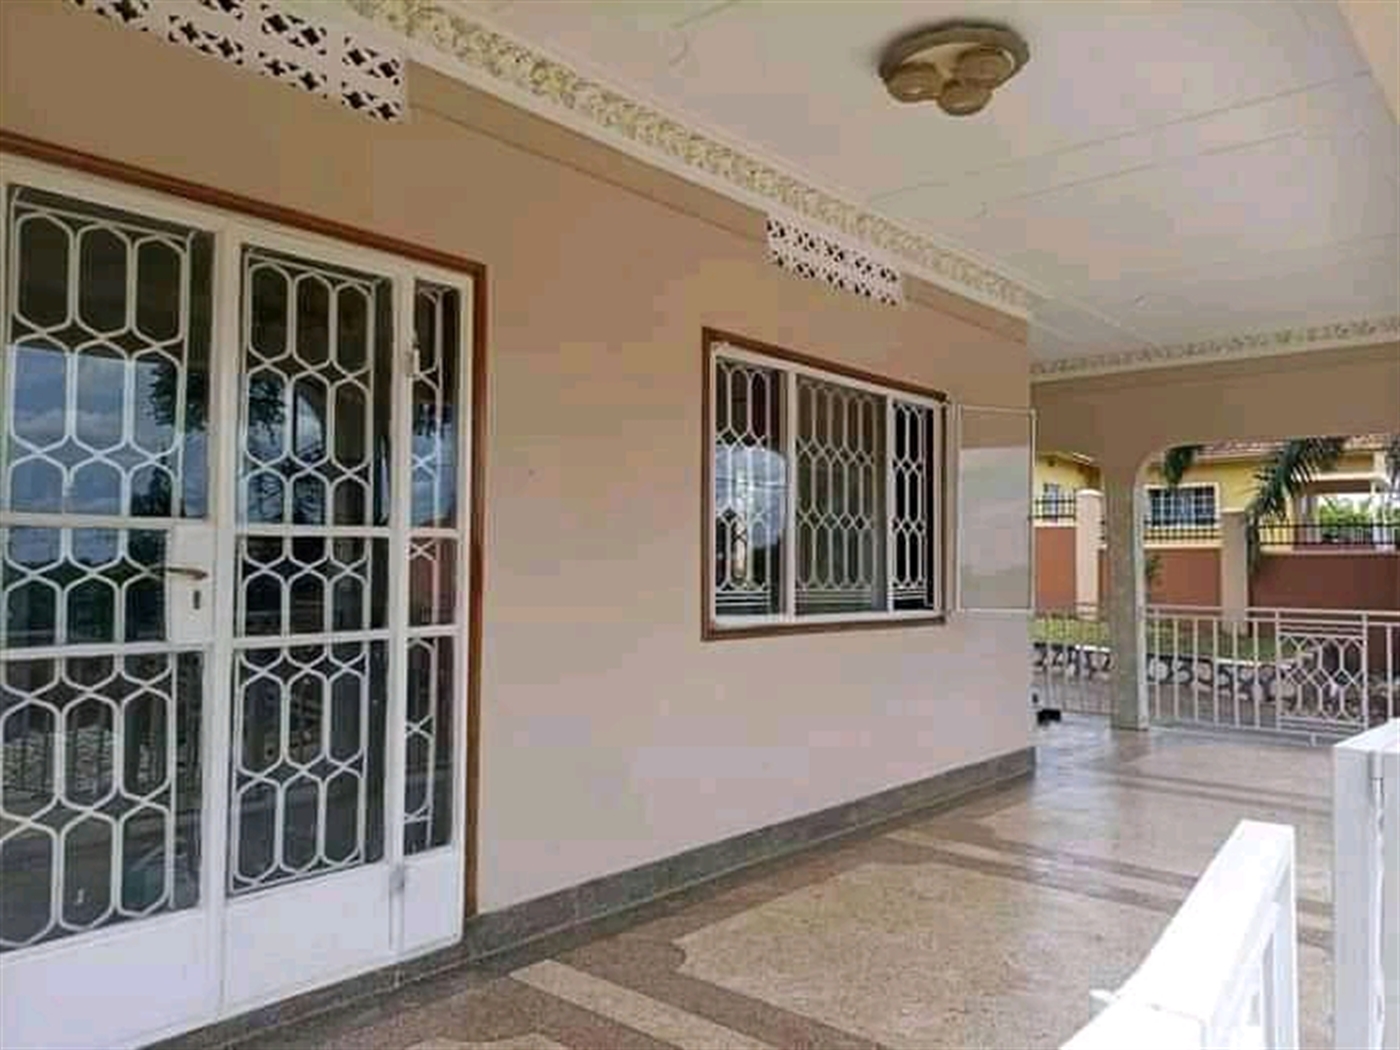 Bungalow for rent in Rubaga Kampala